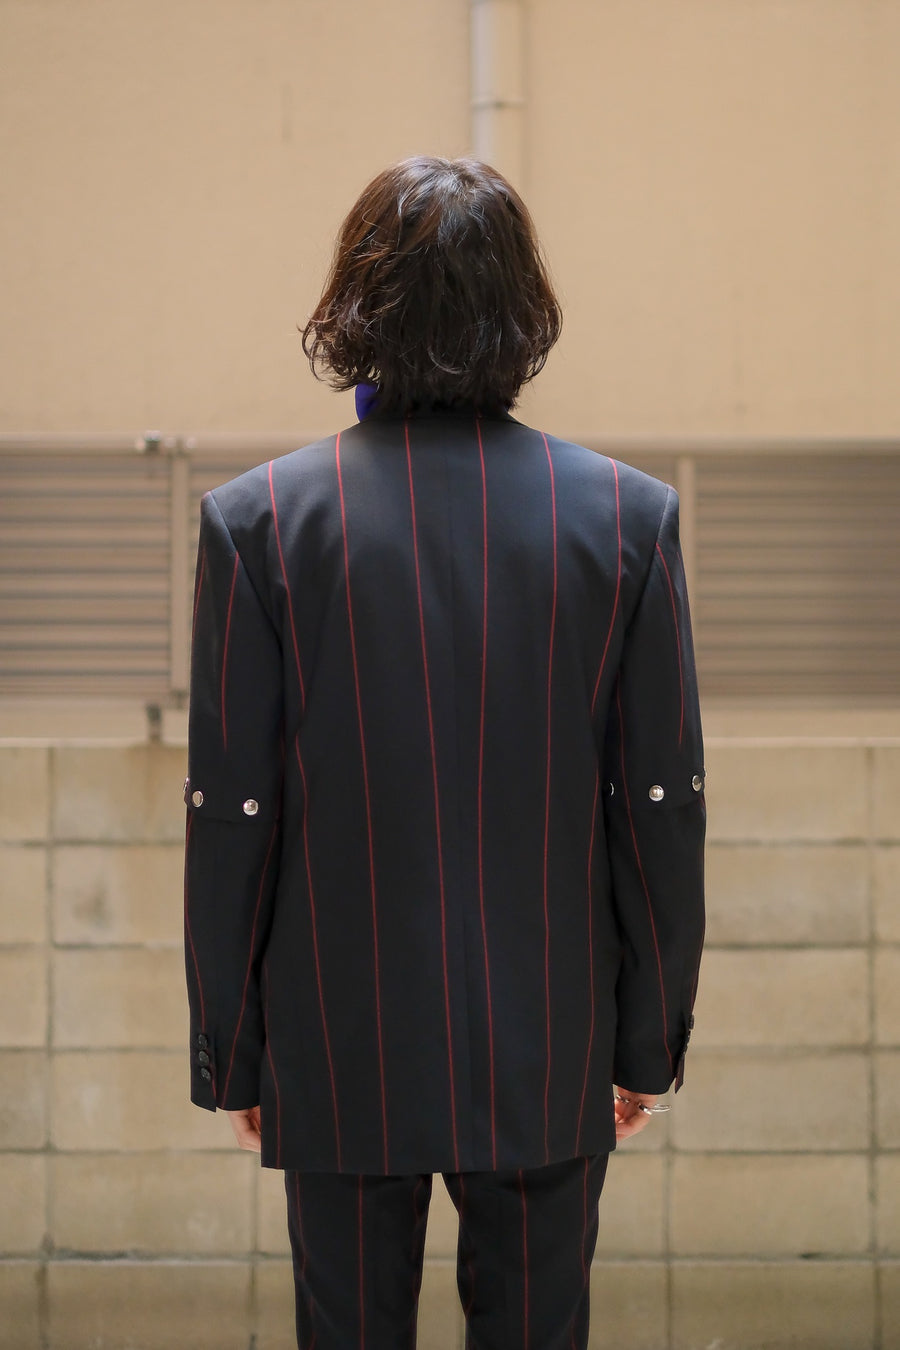 LITTLEBIG  Removable Stripe Single Jacket（Black or Navy or Brown）